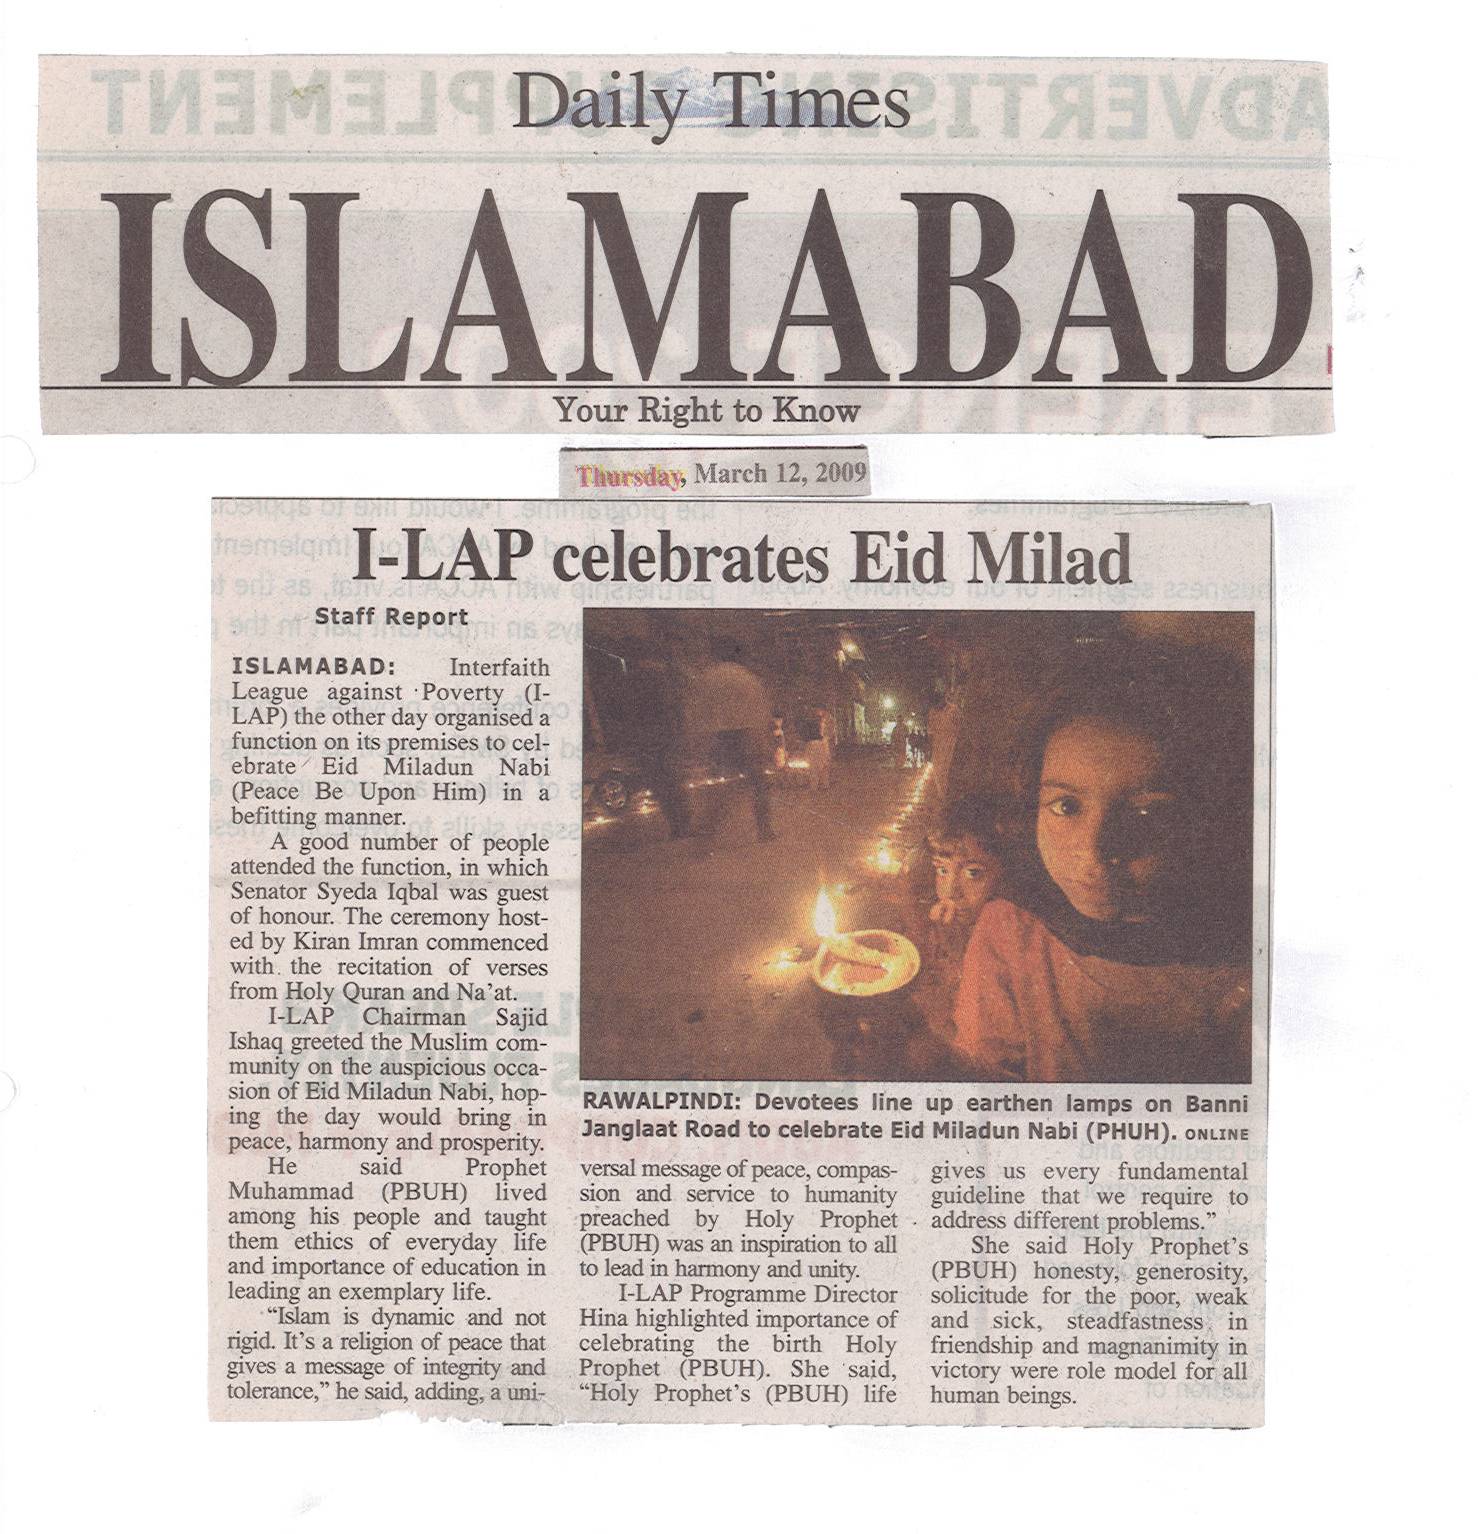 I-LAP celebrates Eid Milad